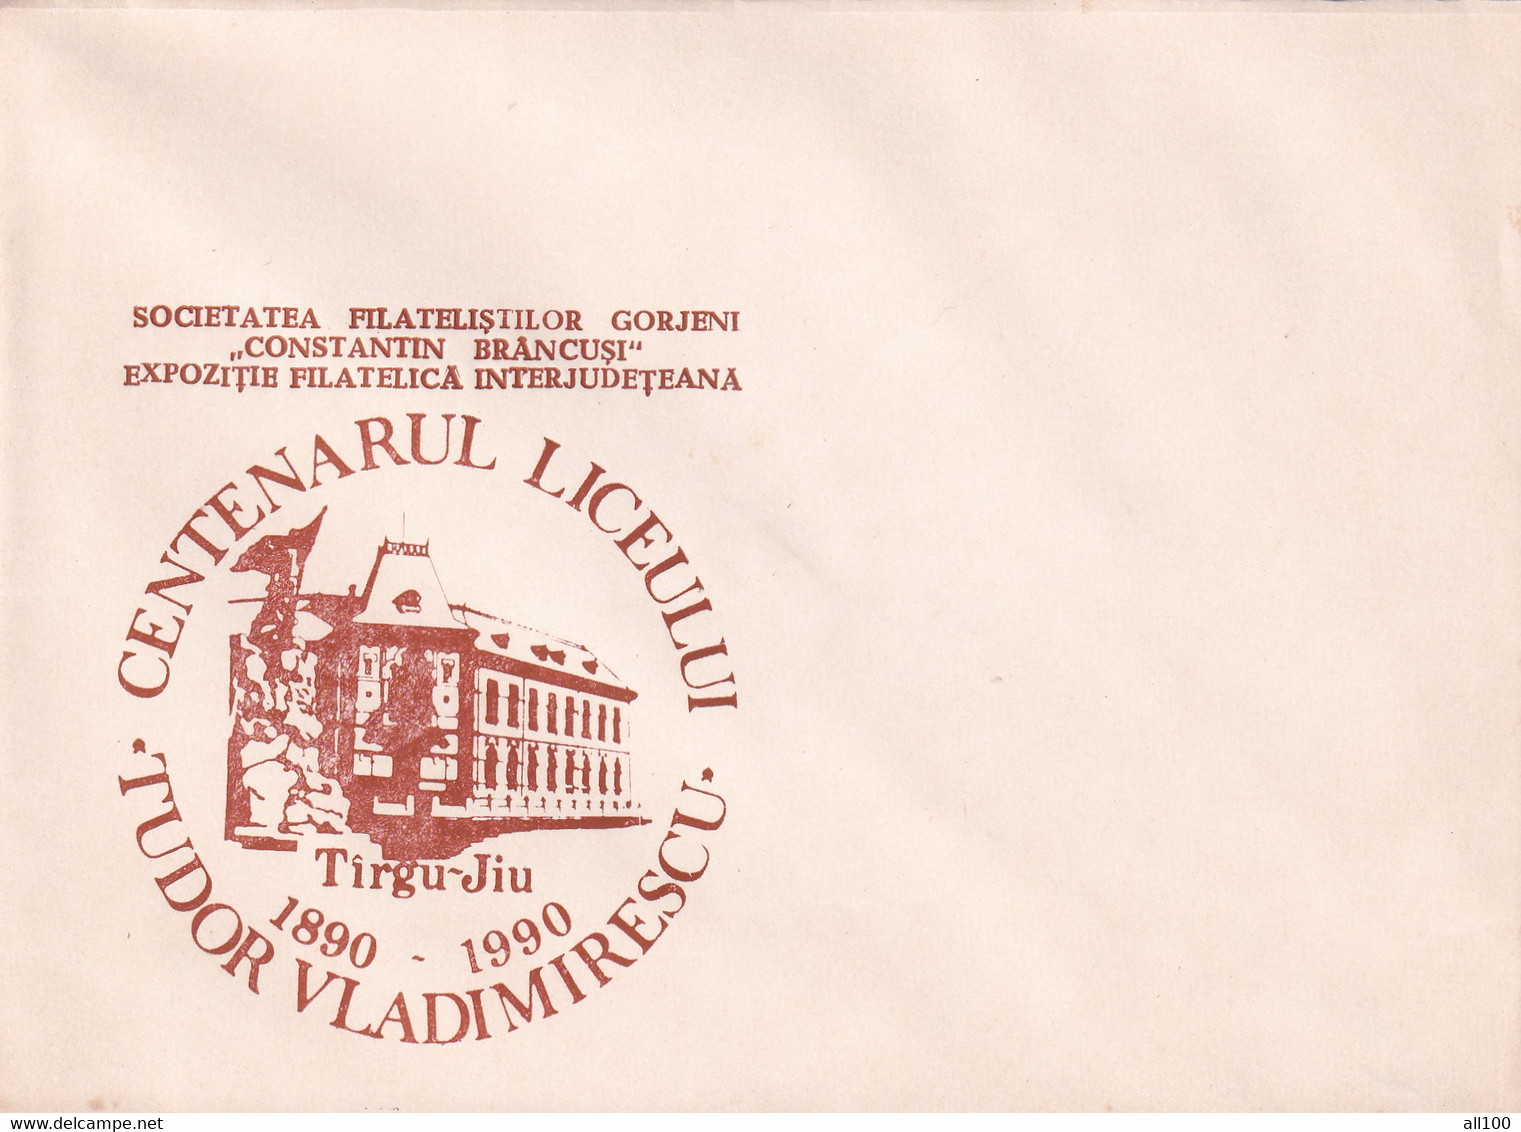 A19349 - CENTENARUL LICEULUI TUDOR VLADIMIRESCU TARGU JIU TIRGU-JIU COVER ENVELOPE UNUSED 1990 ROMANIA - Covers & Documents